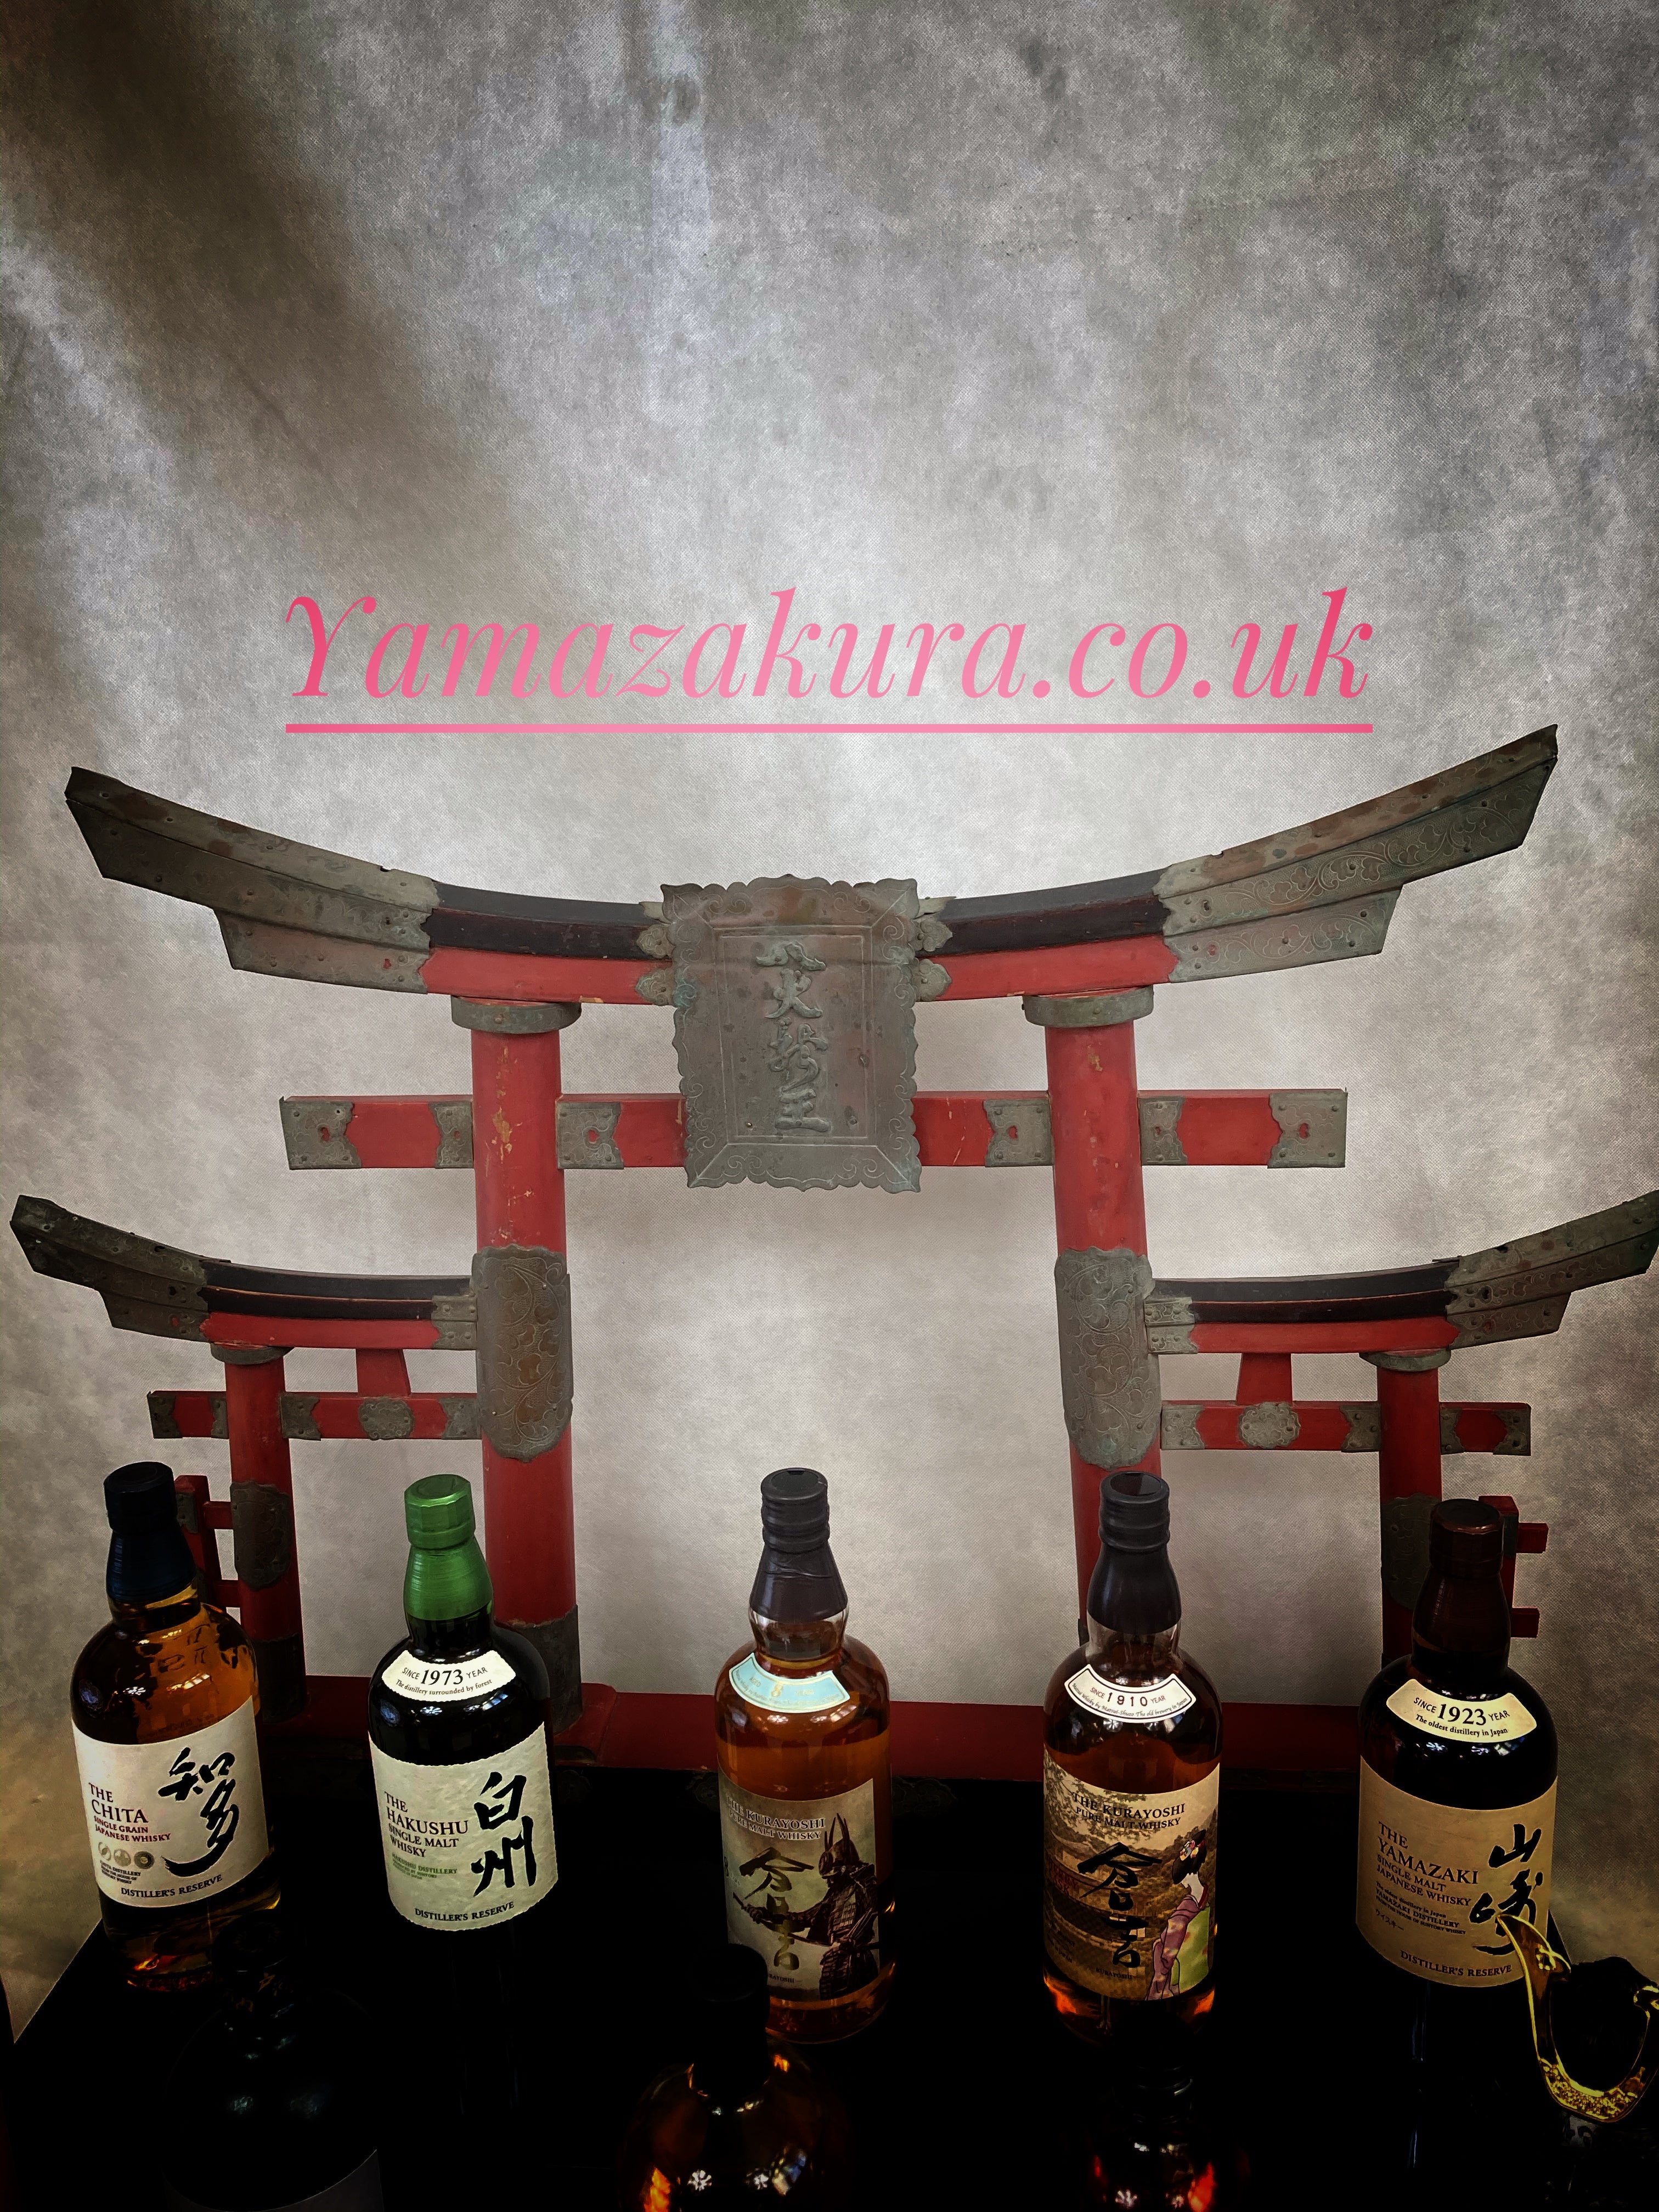 Whisky stand ! - Yamazakura